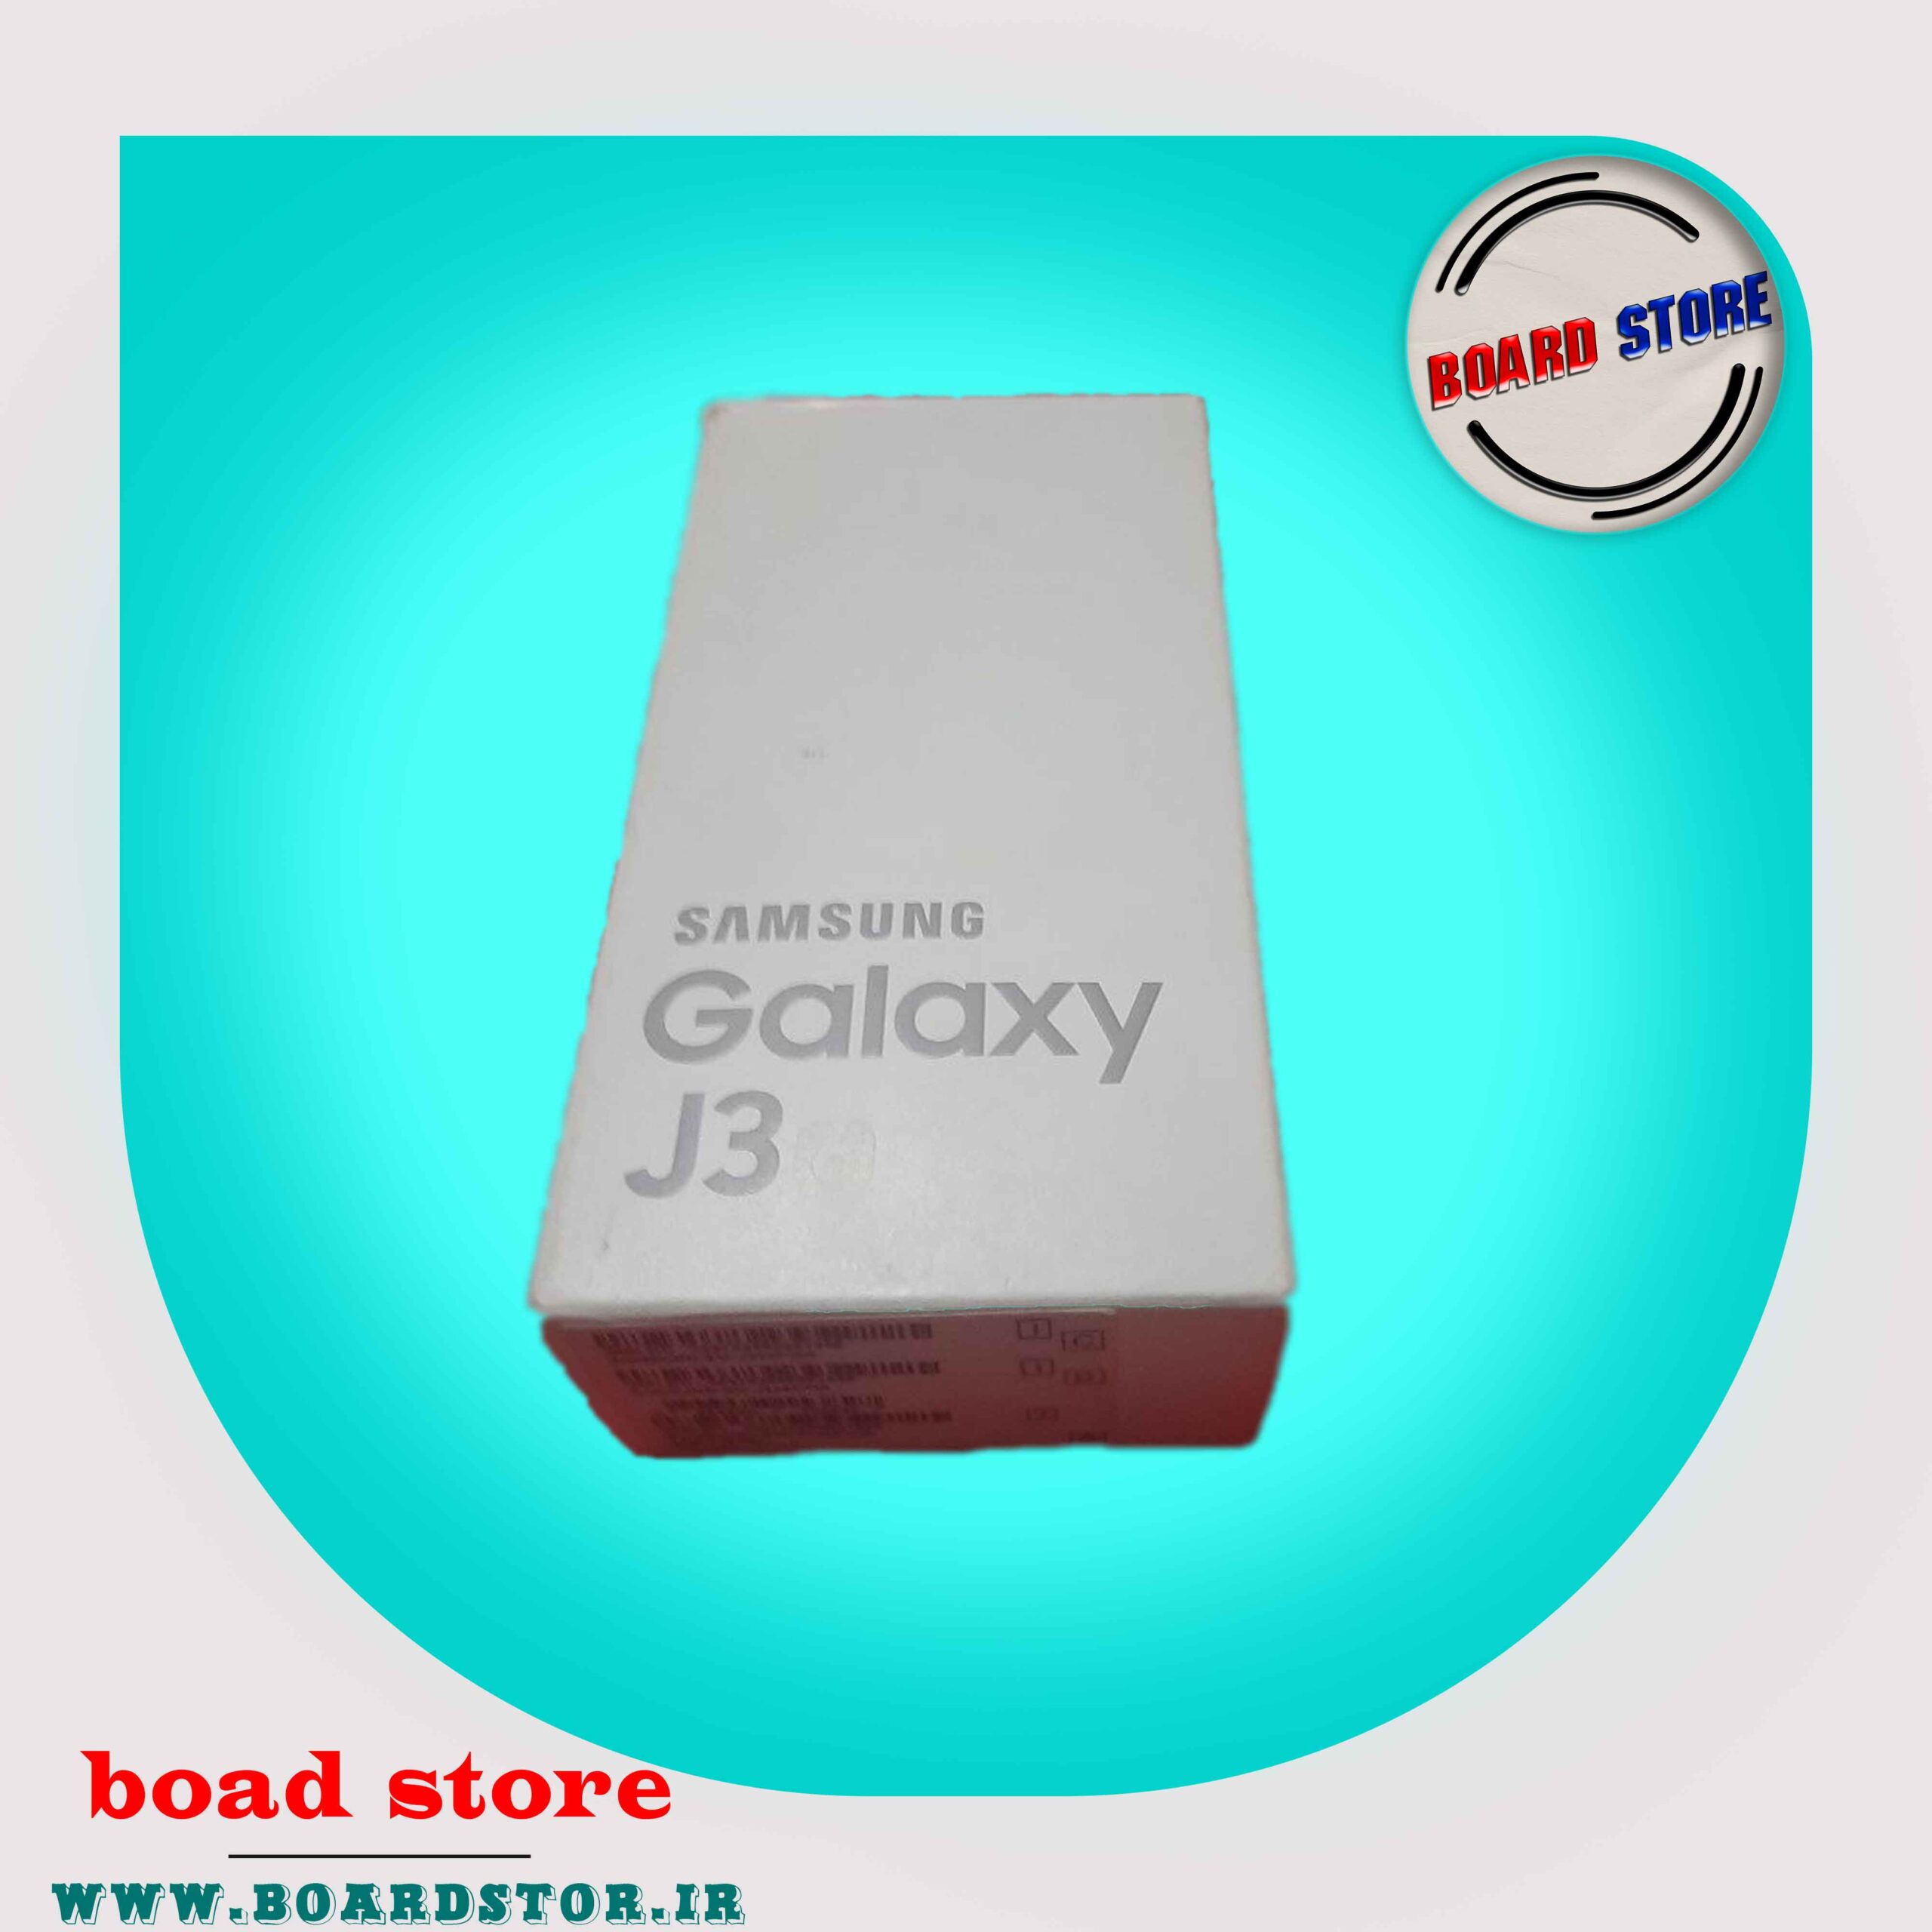 جعبه گوشی موبایل ساسونگ مدل J3